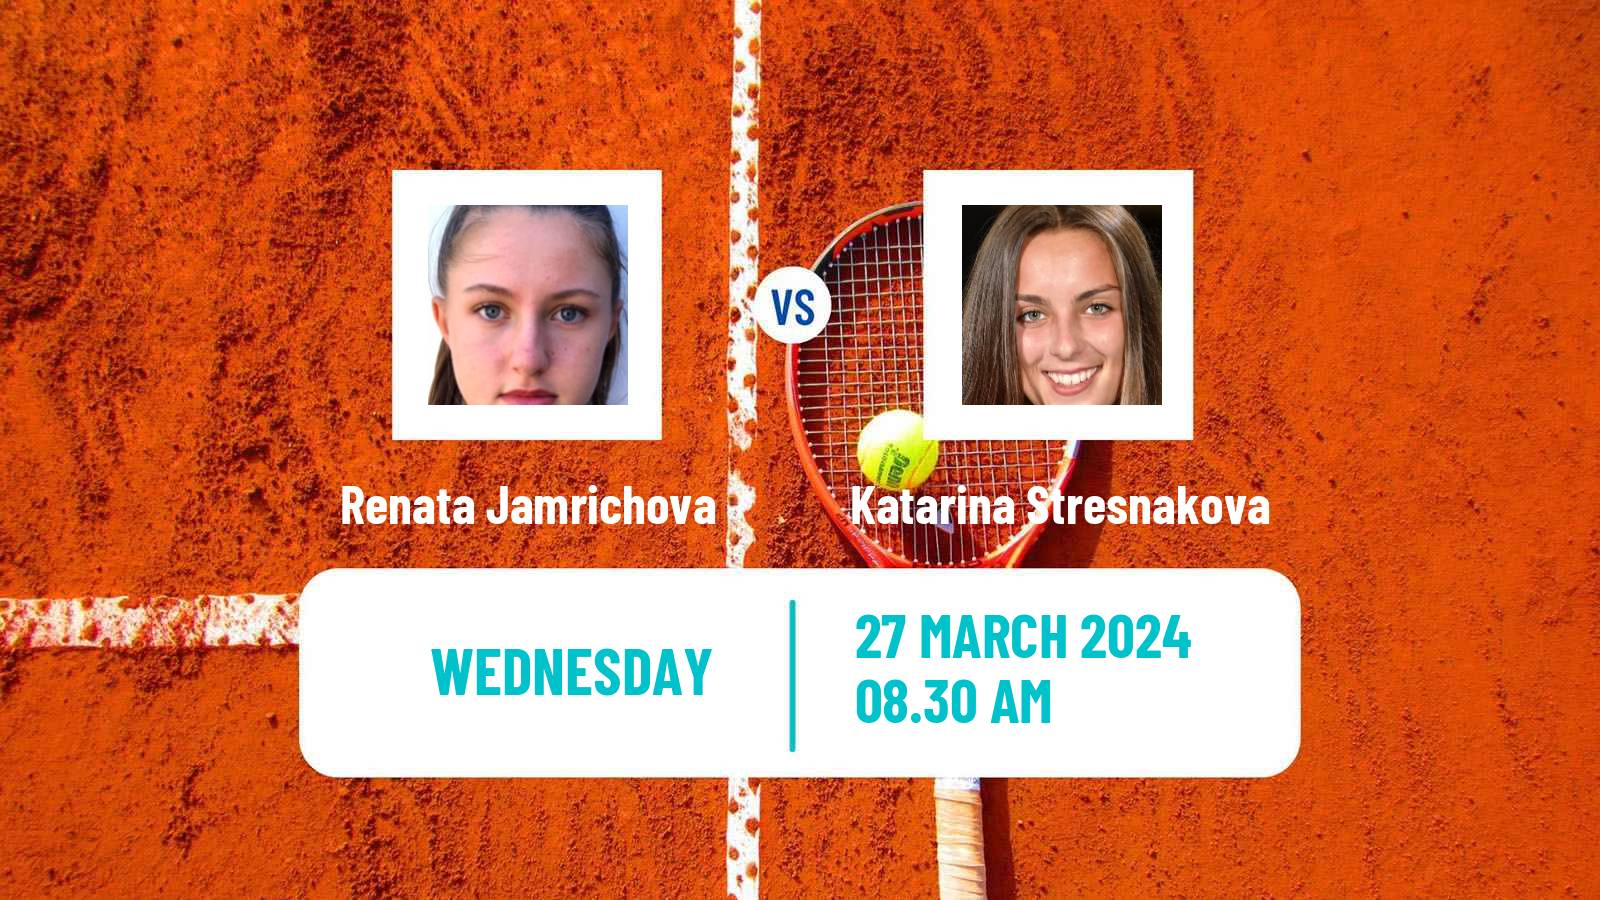 Tennis ITF W15 Sharm Elsheikh 8 Women Renata Jamrichova - Katarina Stresnakova